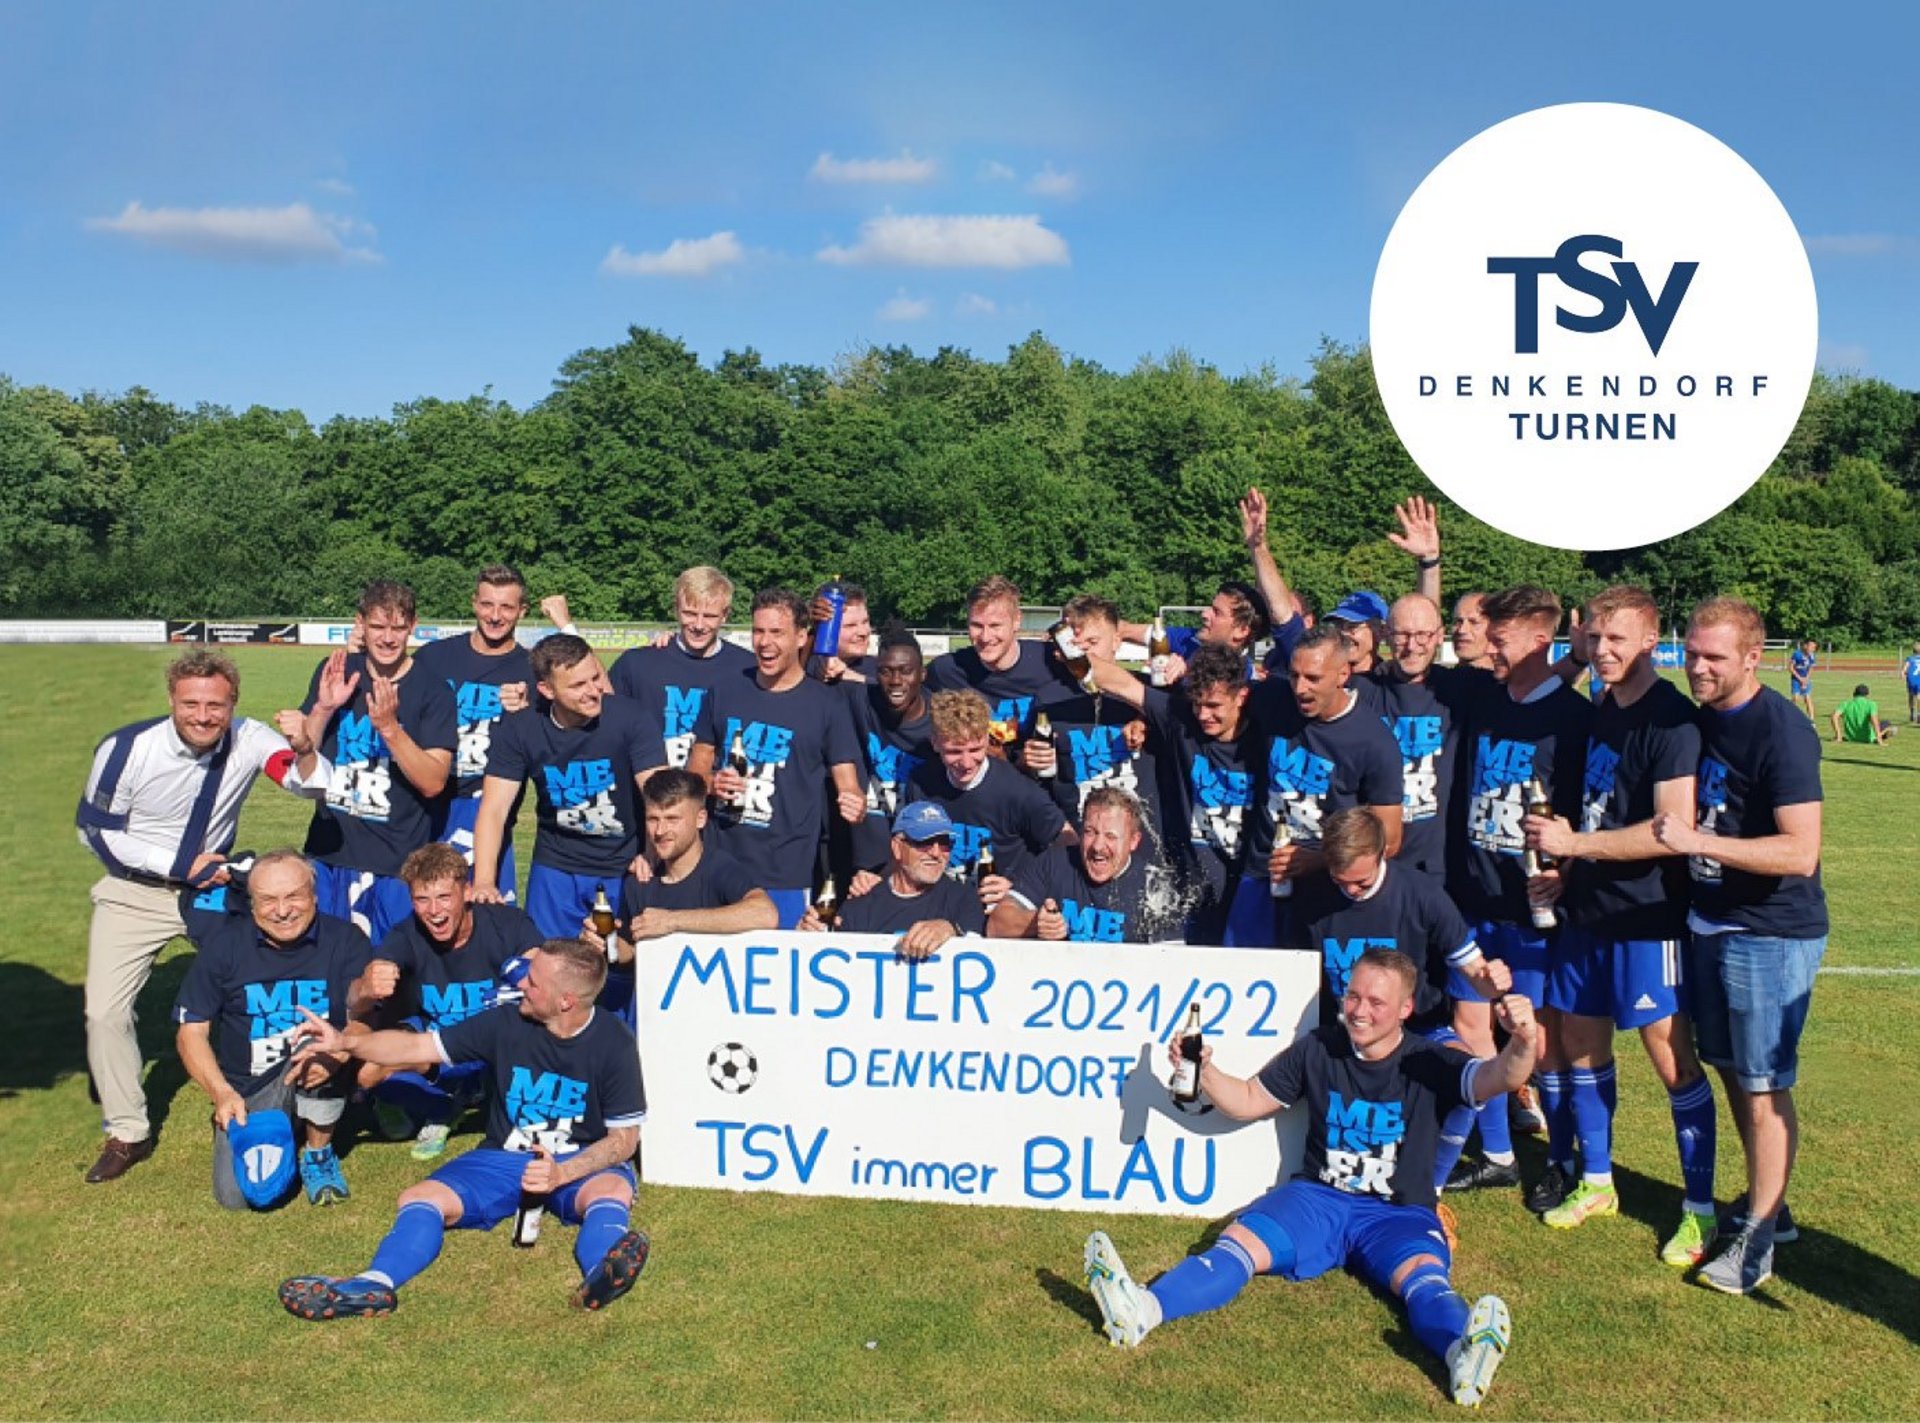 Gruppenbild TSV Denkendorf Meister 2021/22